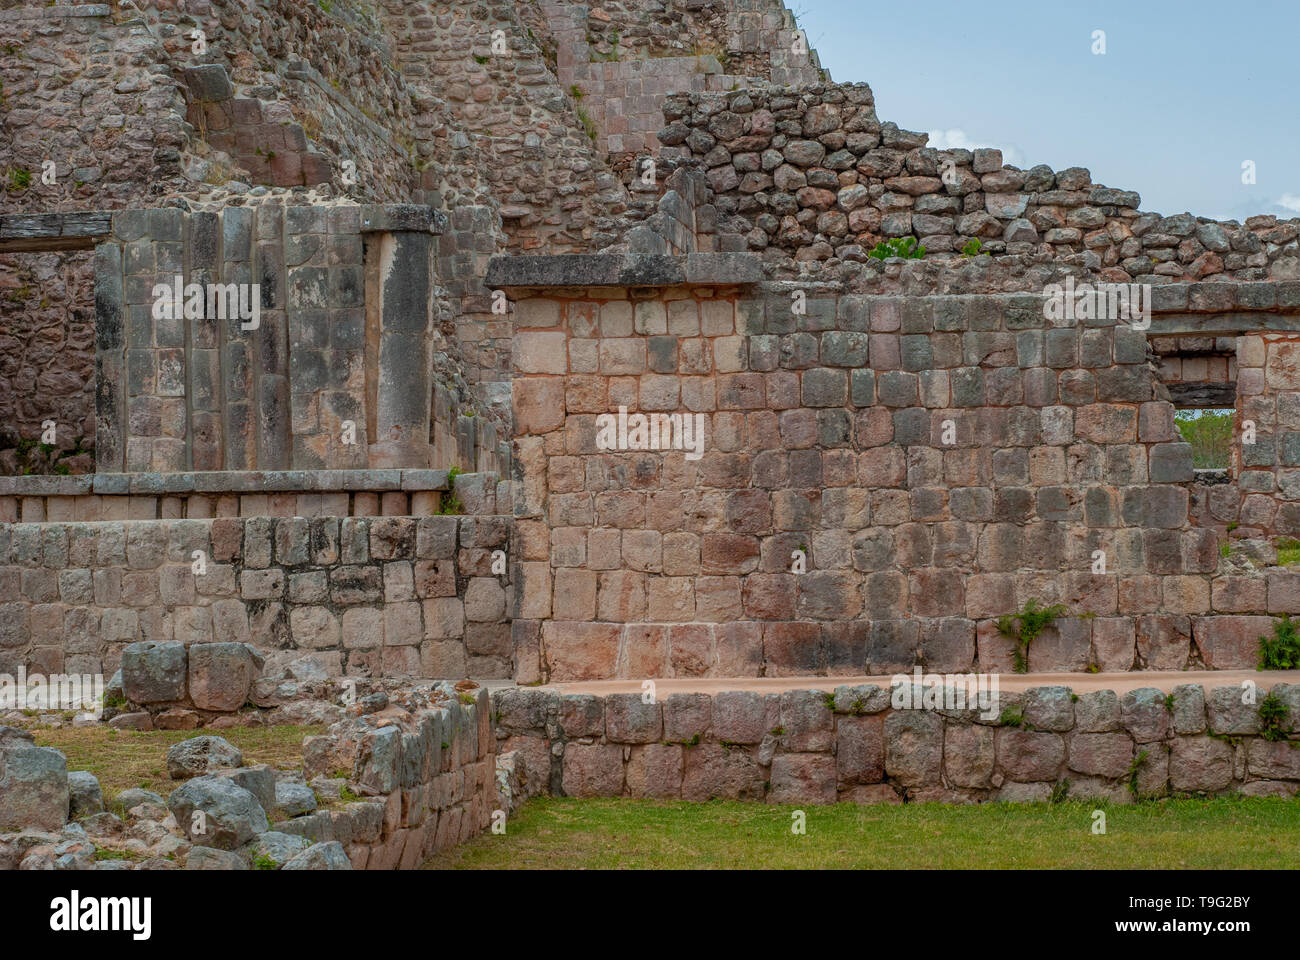 Details of Mayan ruins, Ek Balam archaeological area, in the Yucatan peninsula Stock Photo